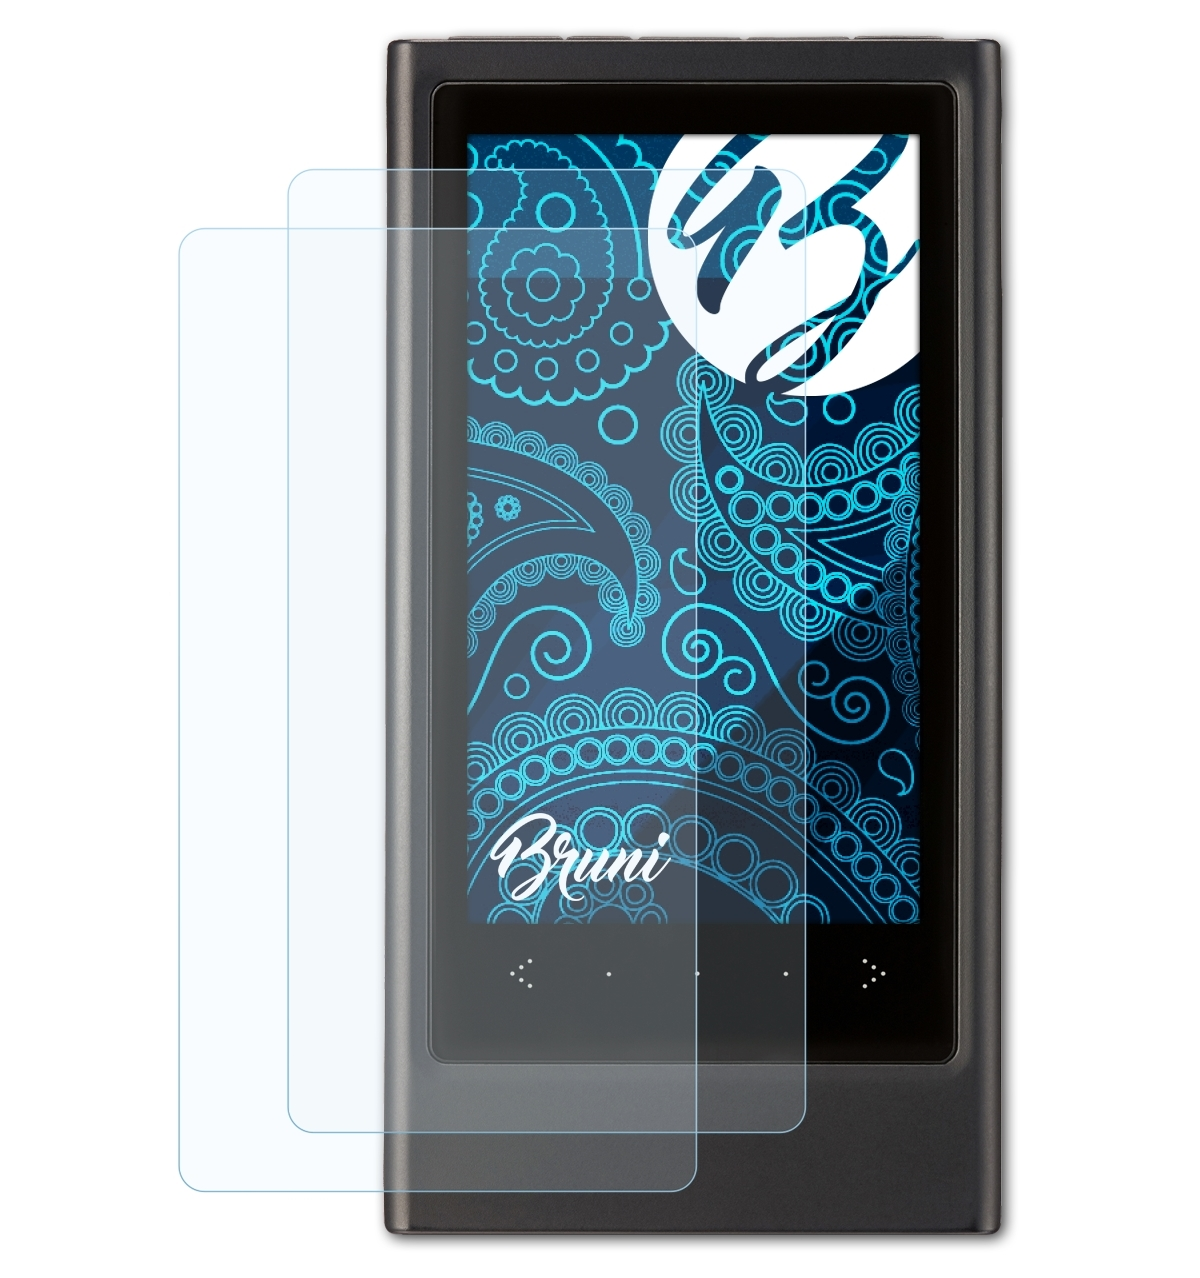 BRUNI 2x Basics-Clear Schutzfolie(für YP-P3) Samsung